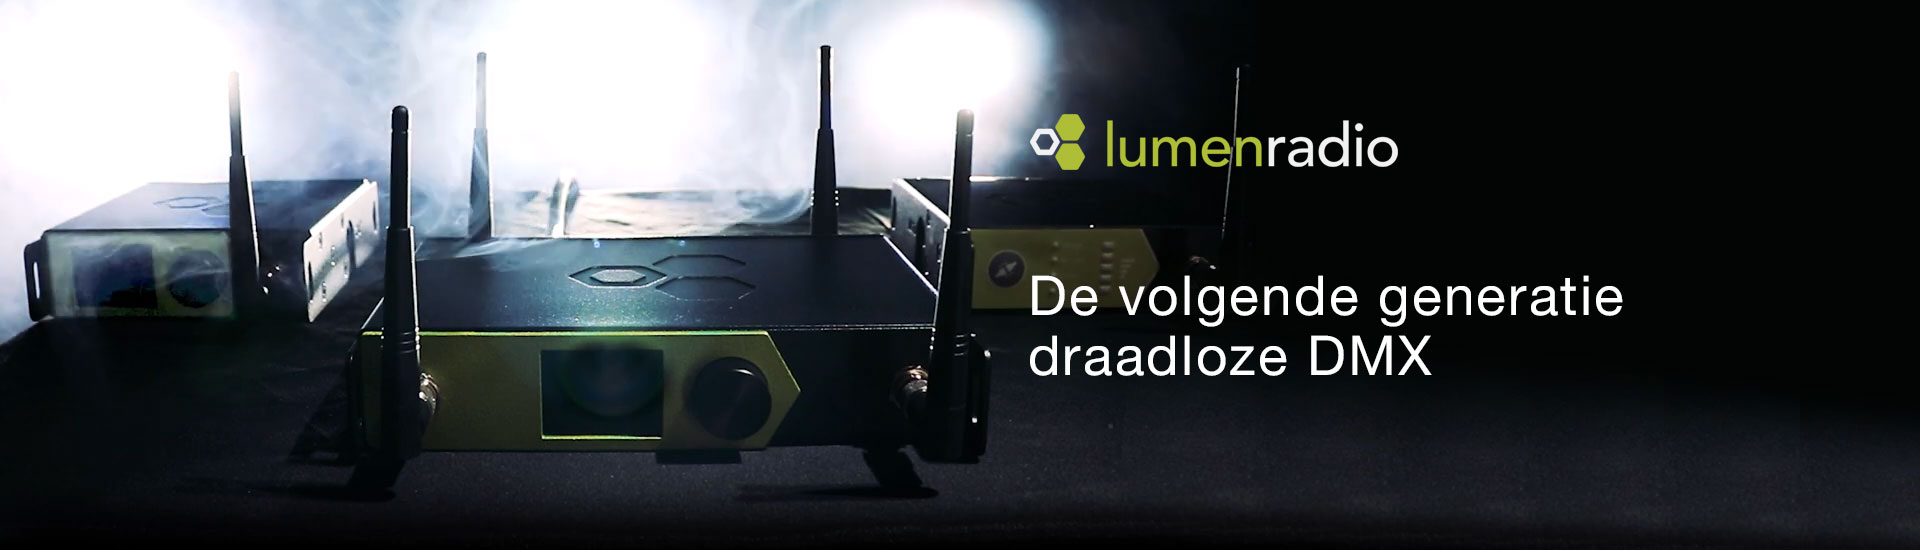 Lumenradio draadloze DMX verlicht met rook